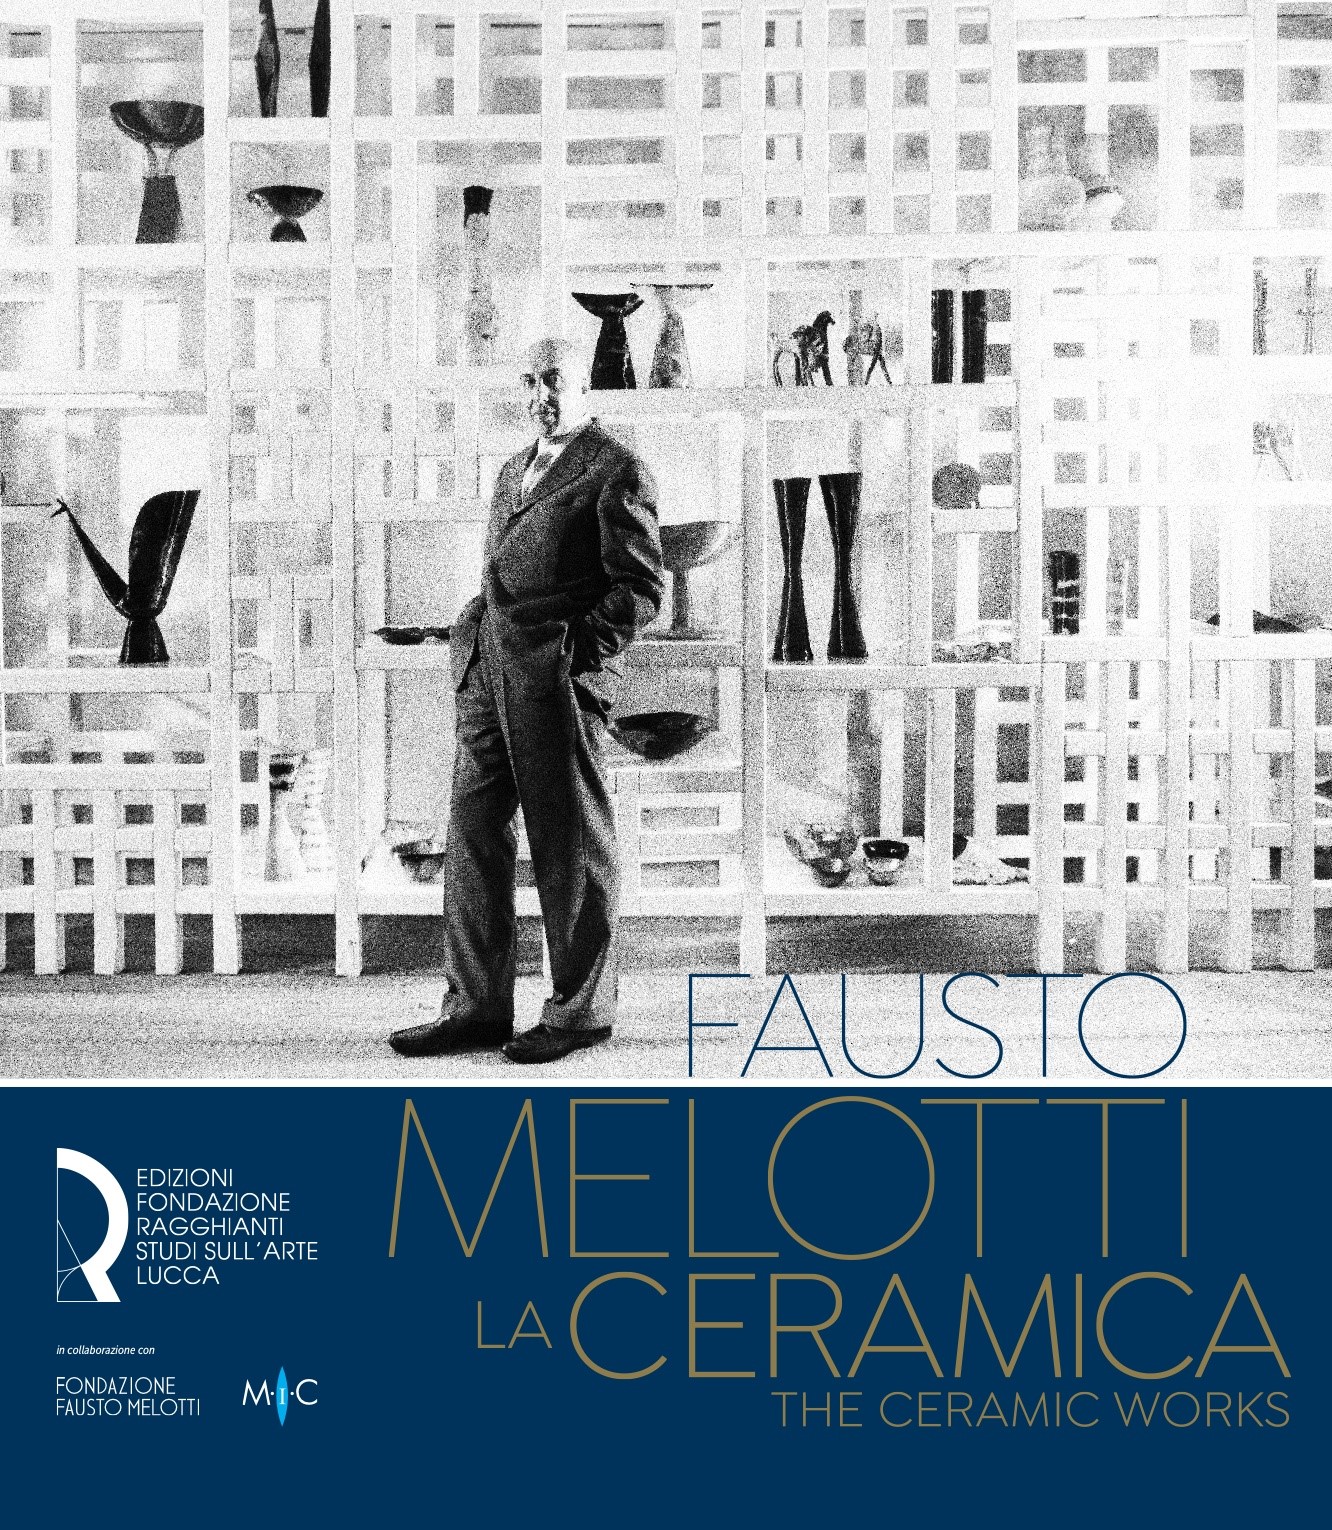 Fausto Melotti. La ceramica / The ceramic works